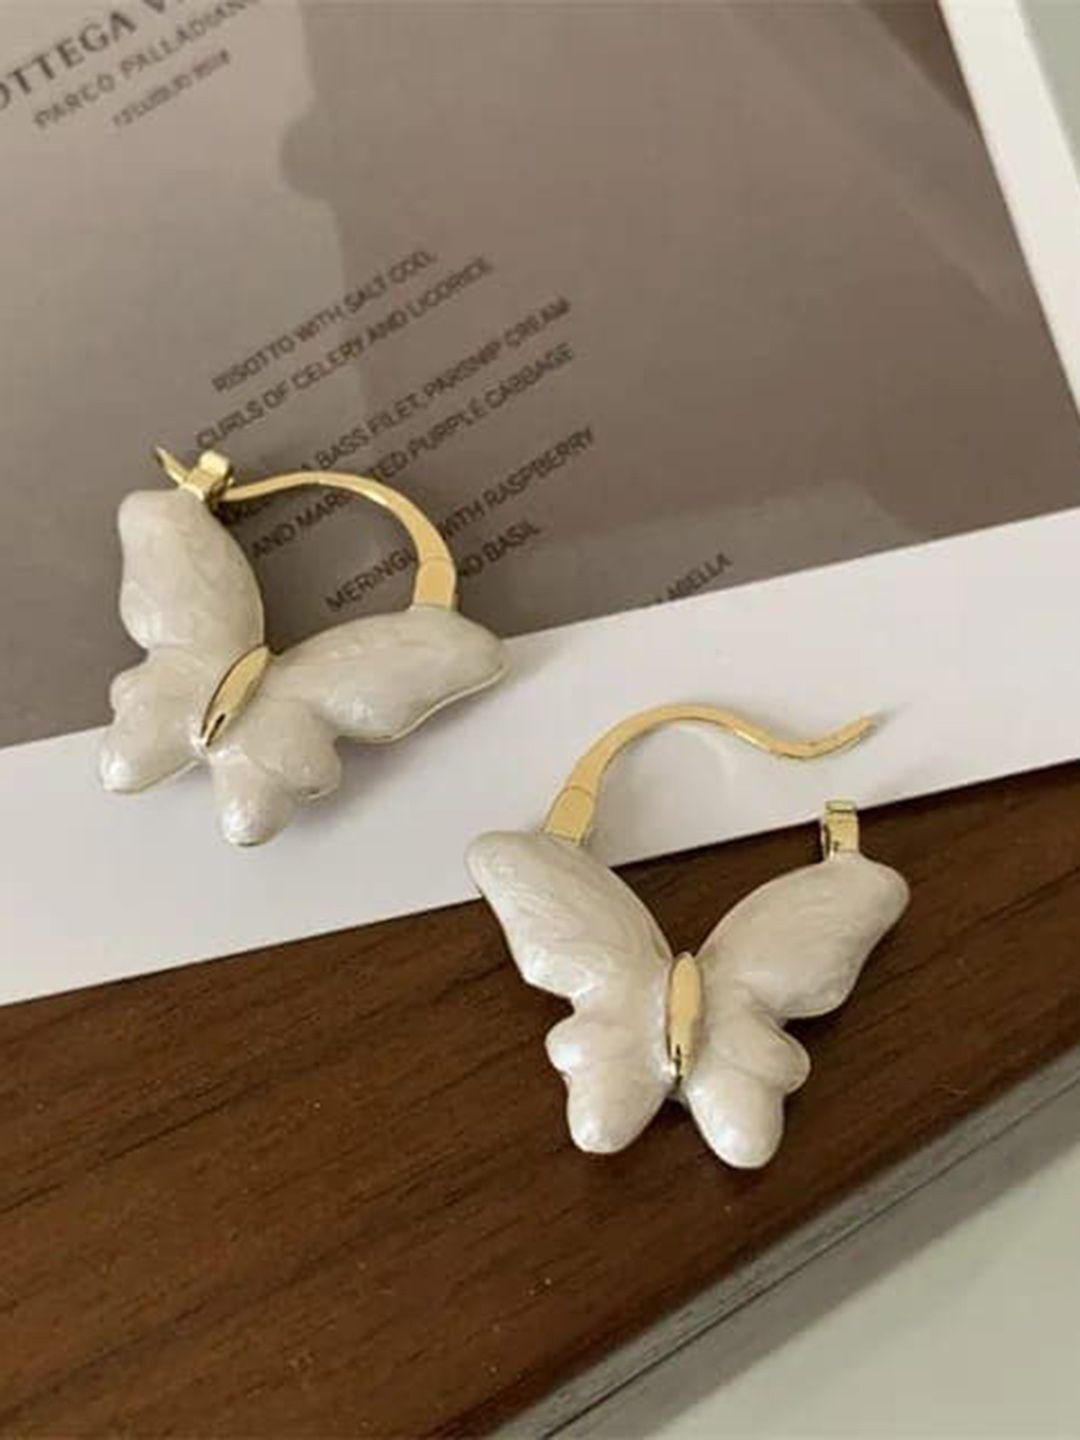 krystalz contemporary hoop earrings